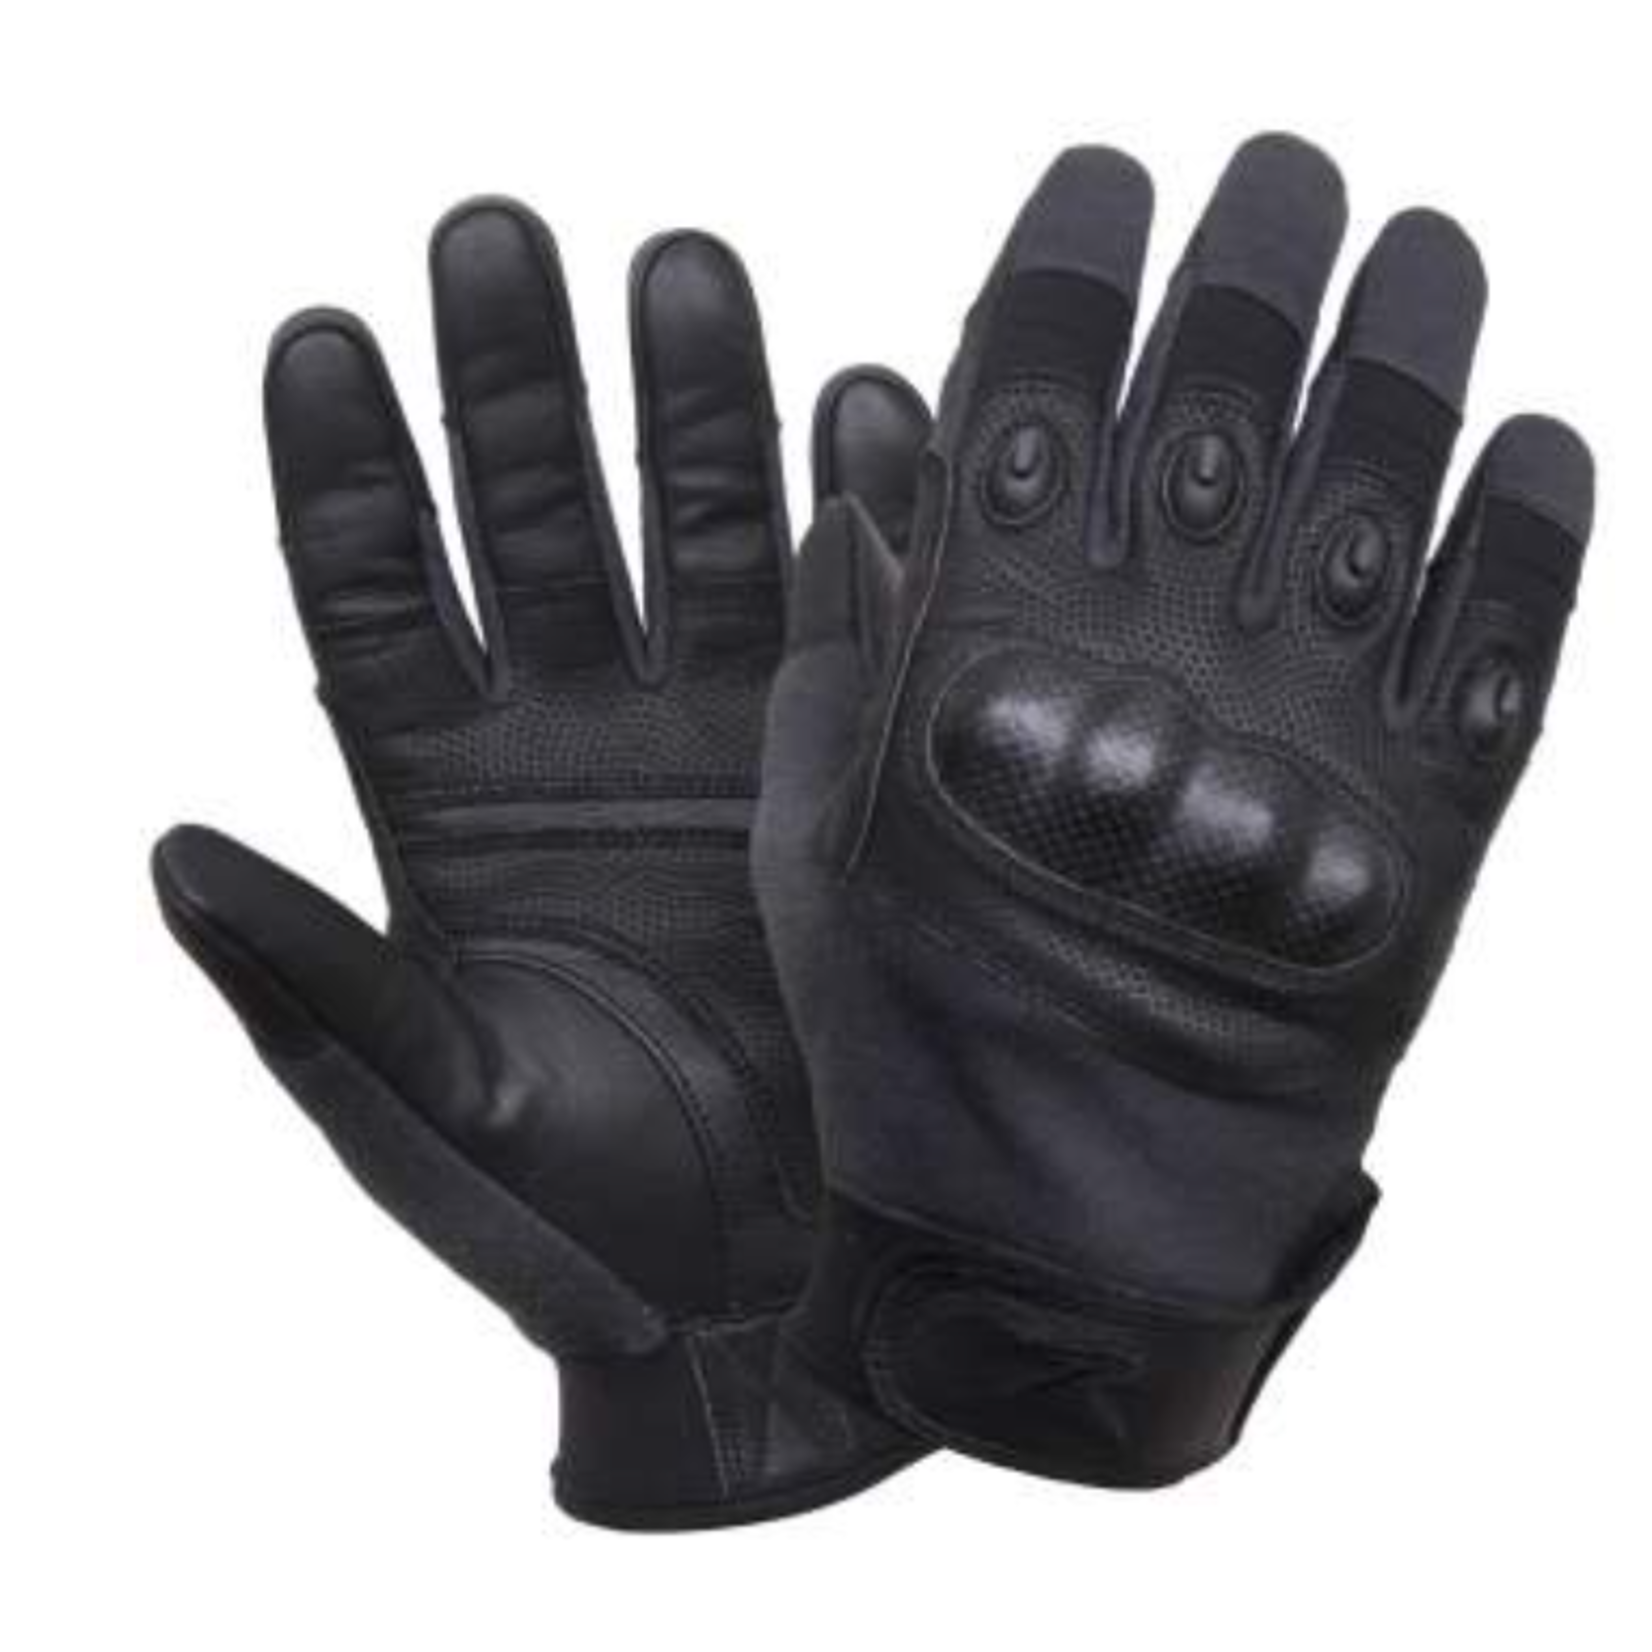 Rothco Rothco hard Knuckle Gloves